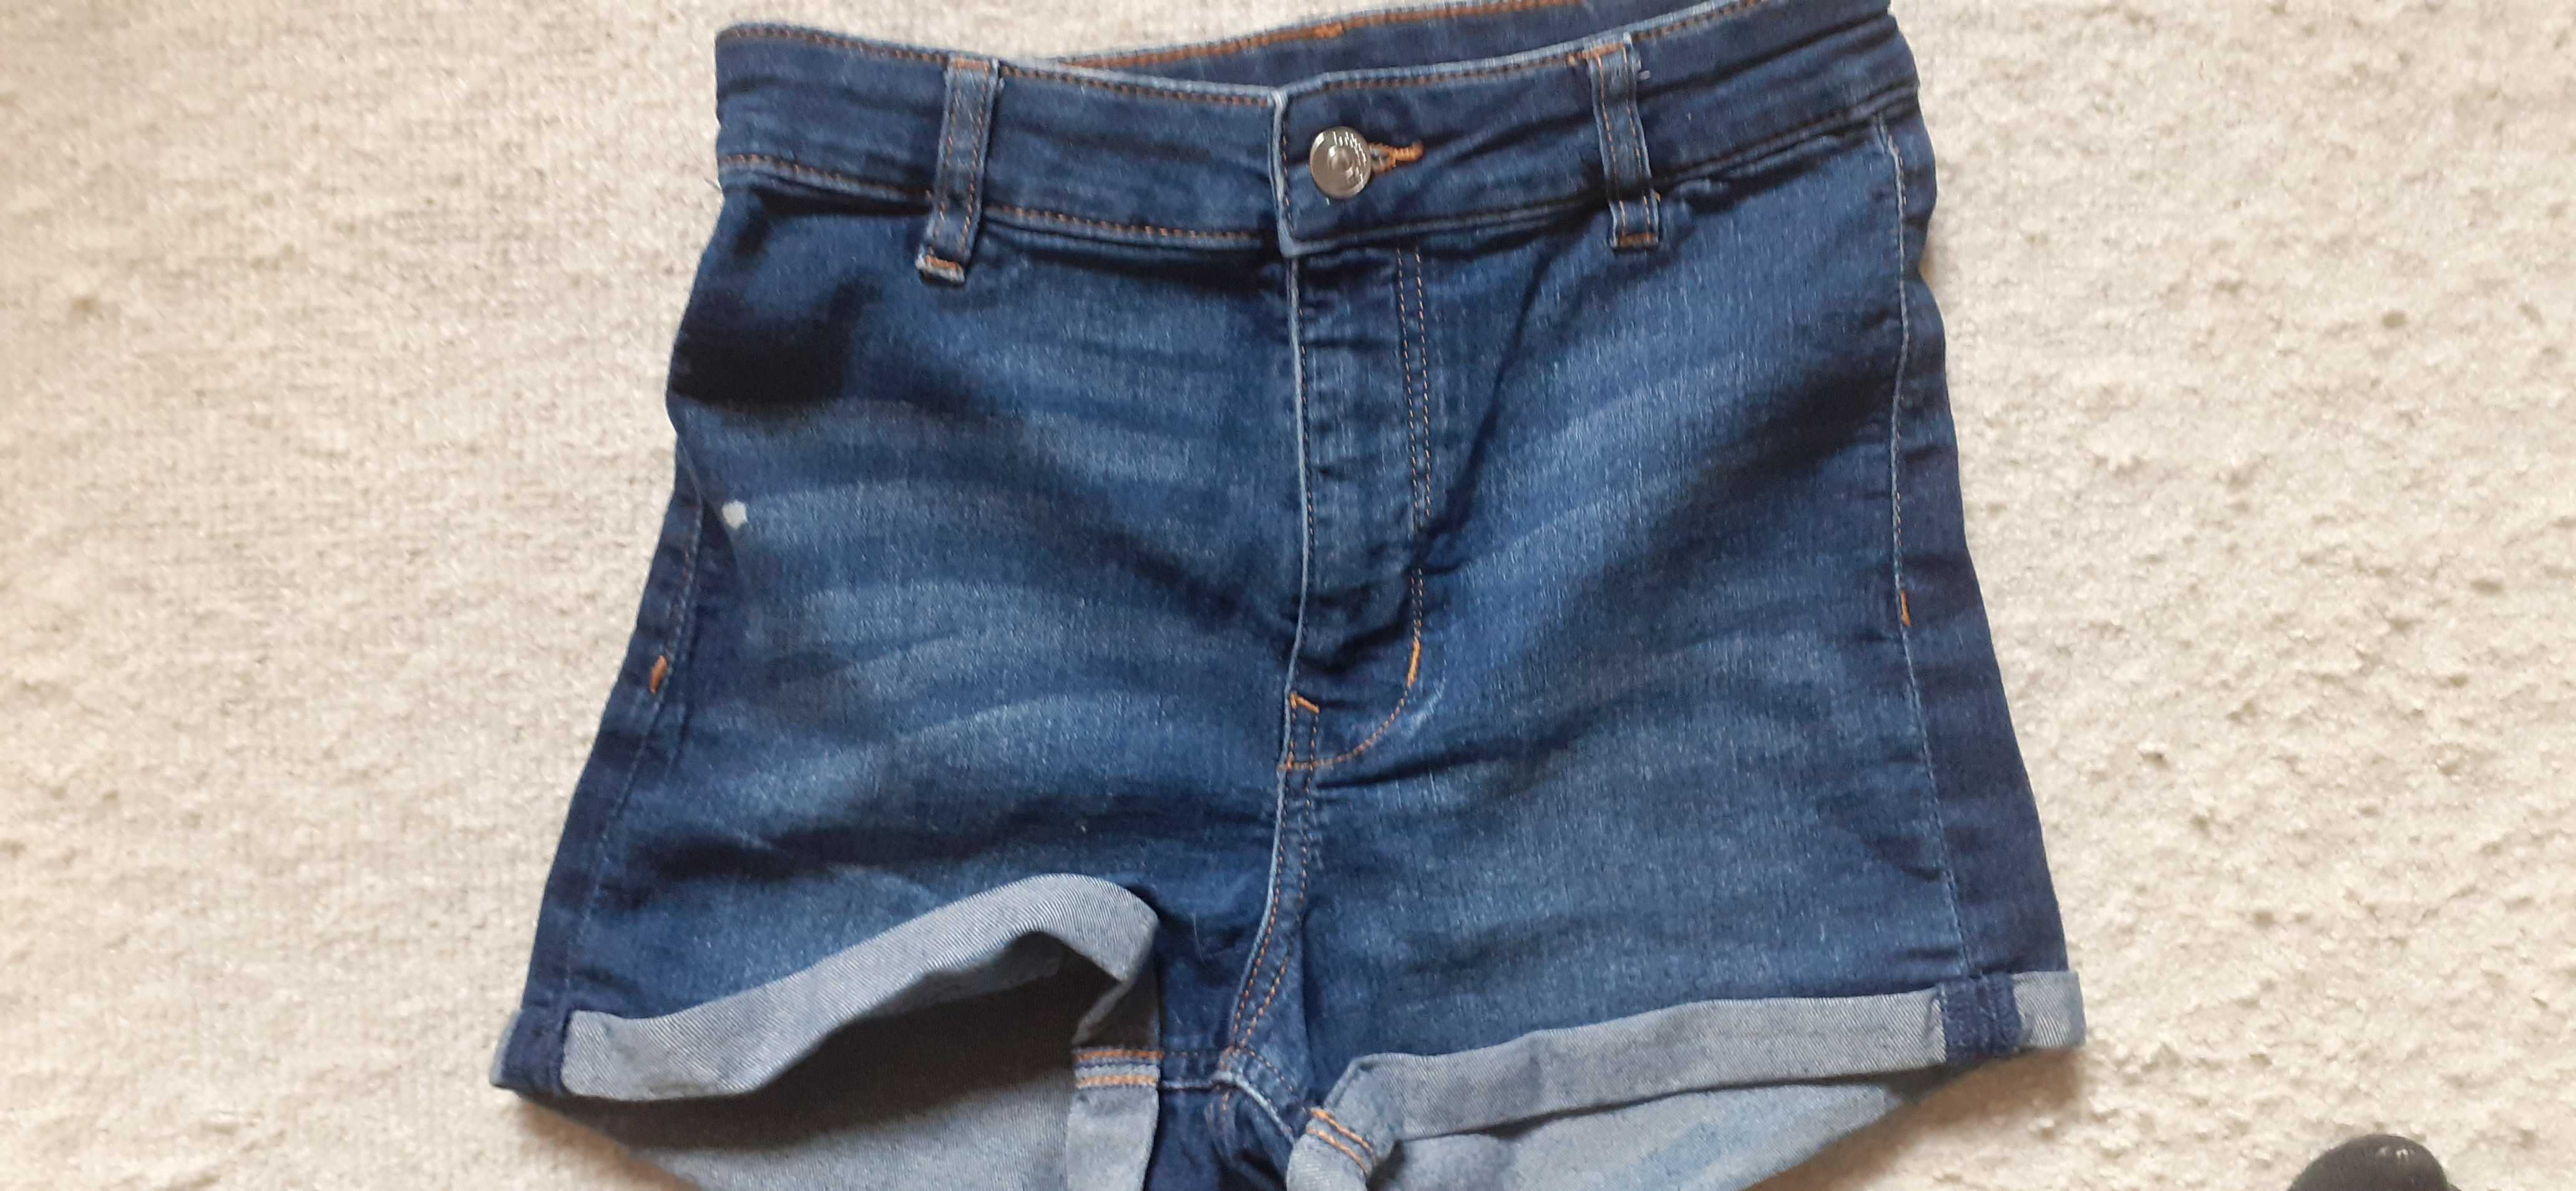 H&M damskie jeansowe  krótkie spodenki, szorty, r. 36.